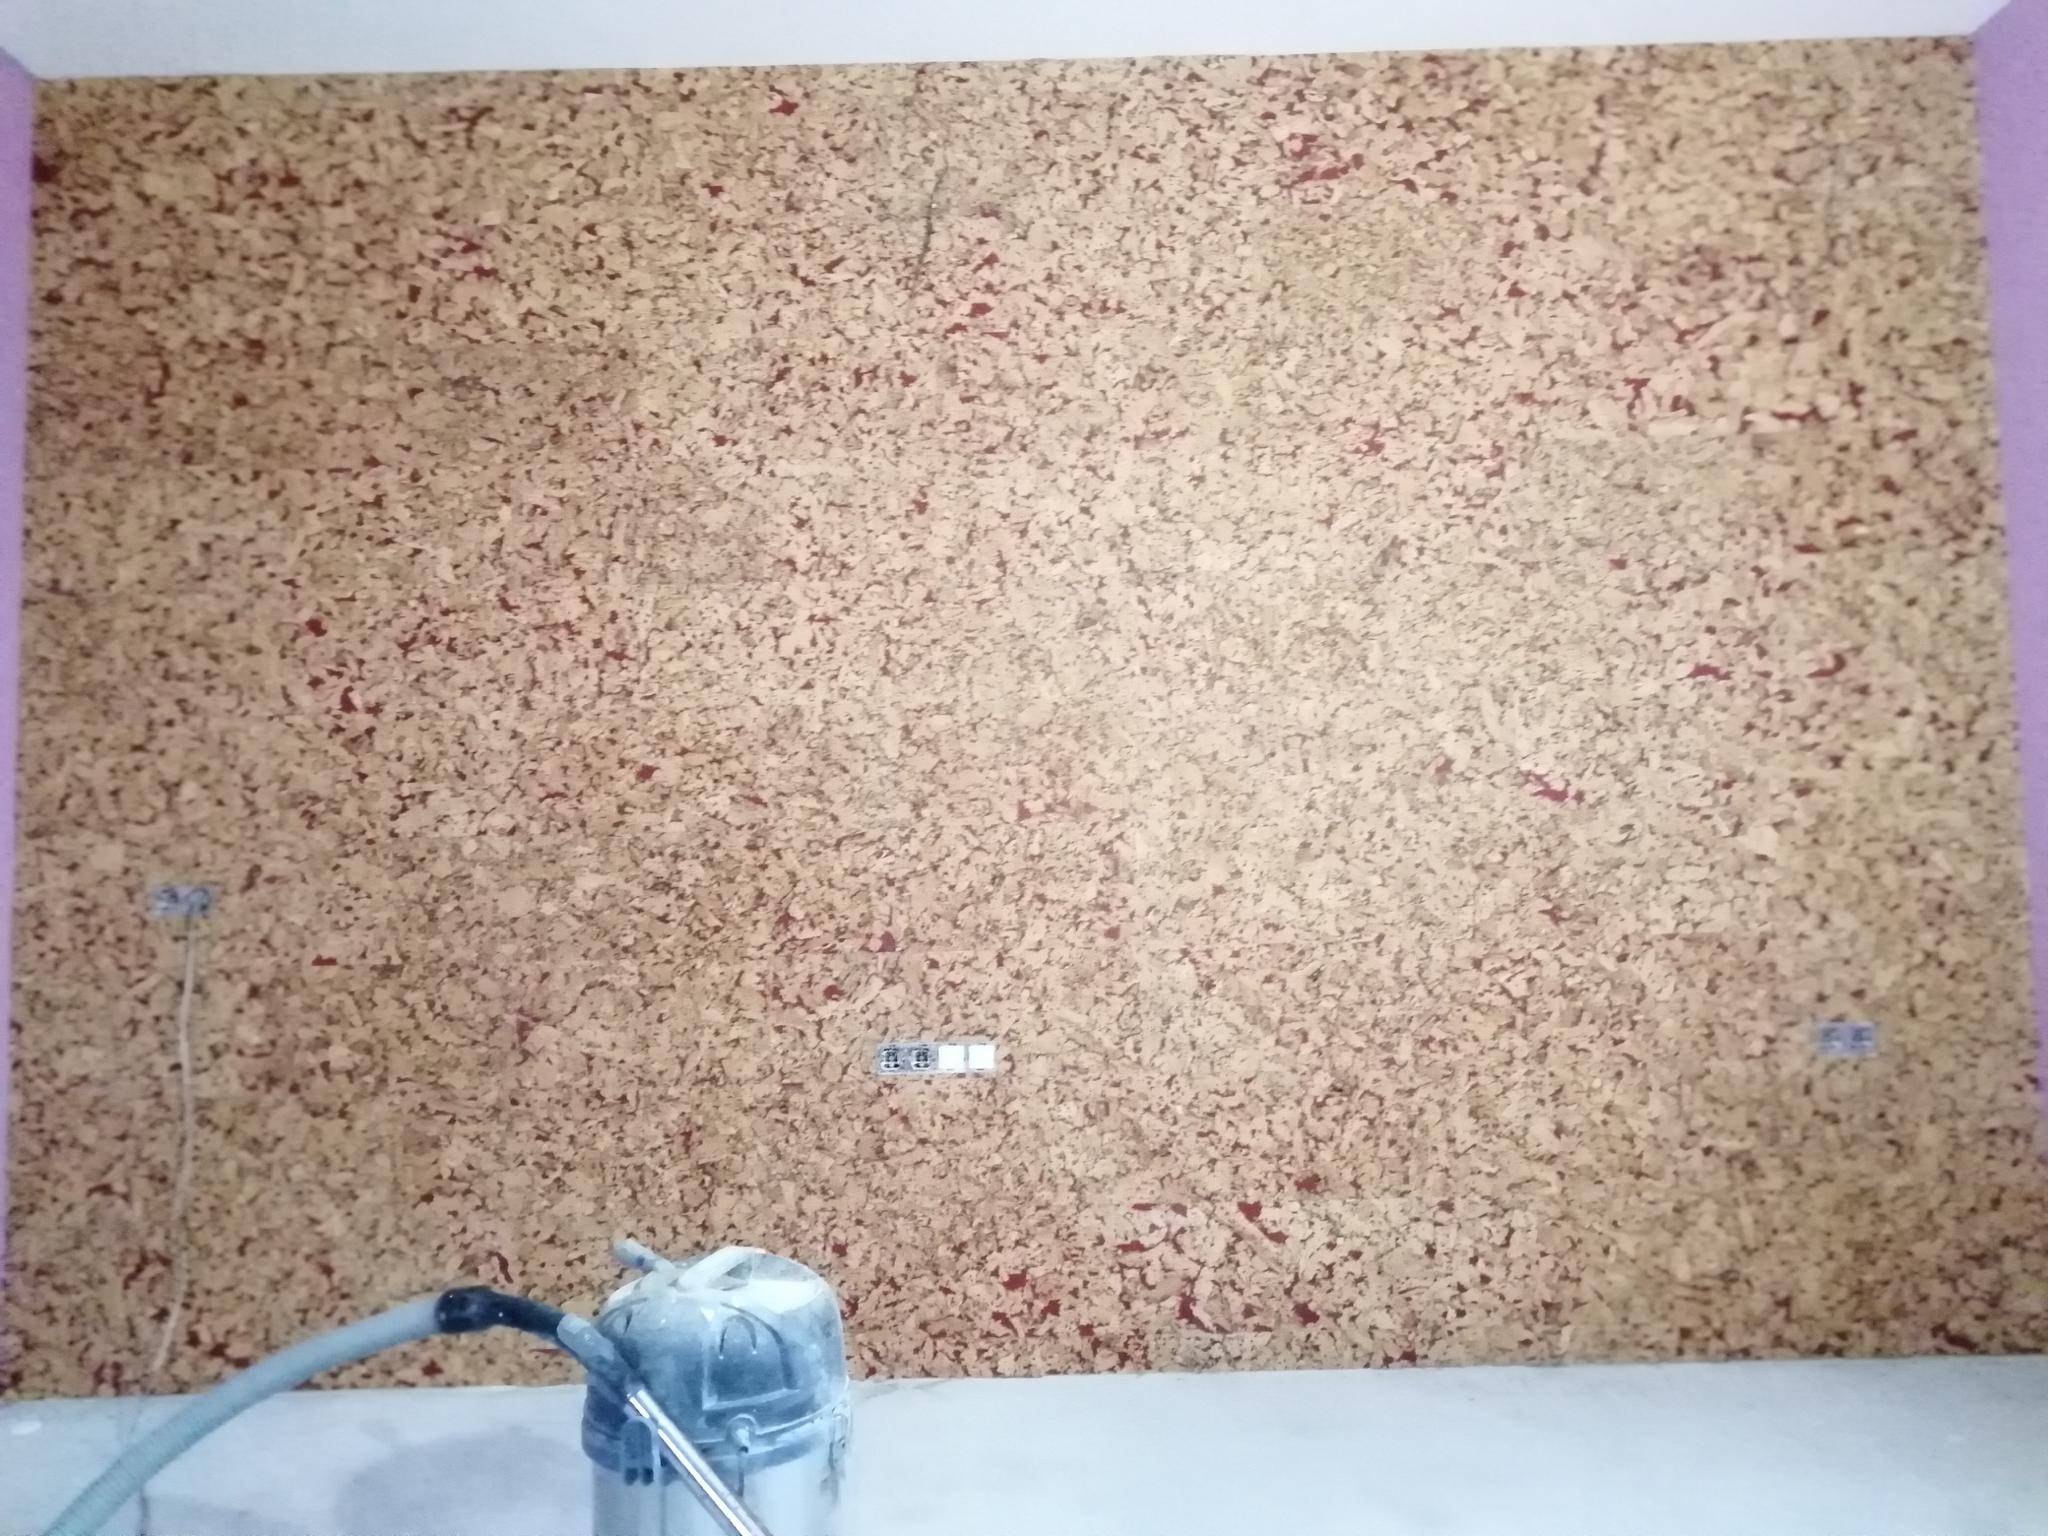 Как клеить пробку на стены - технология оклеивания стен пробкой (+ фото)